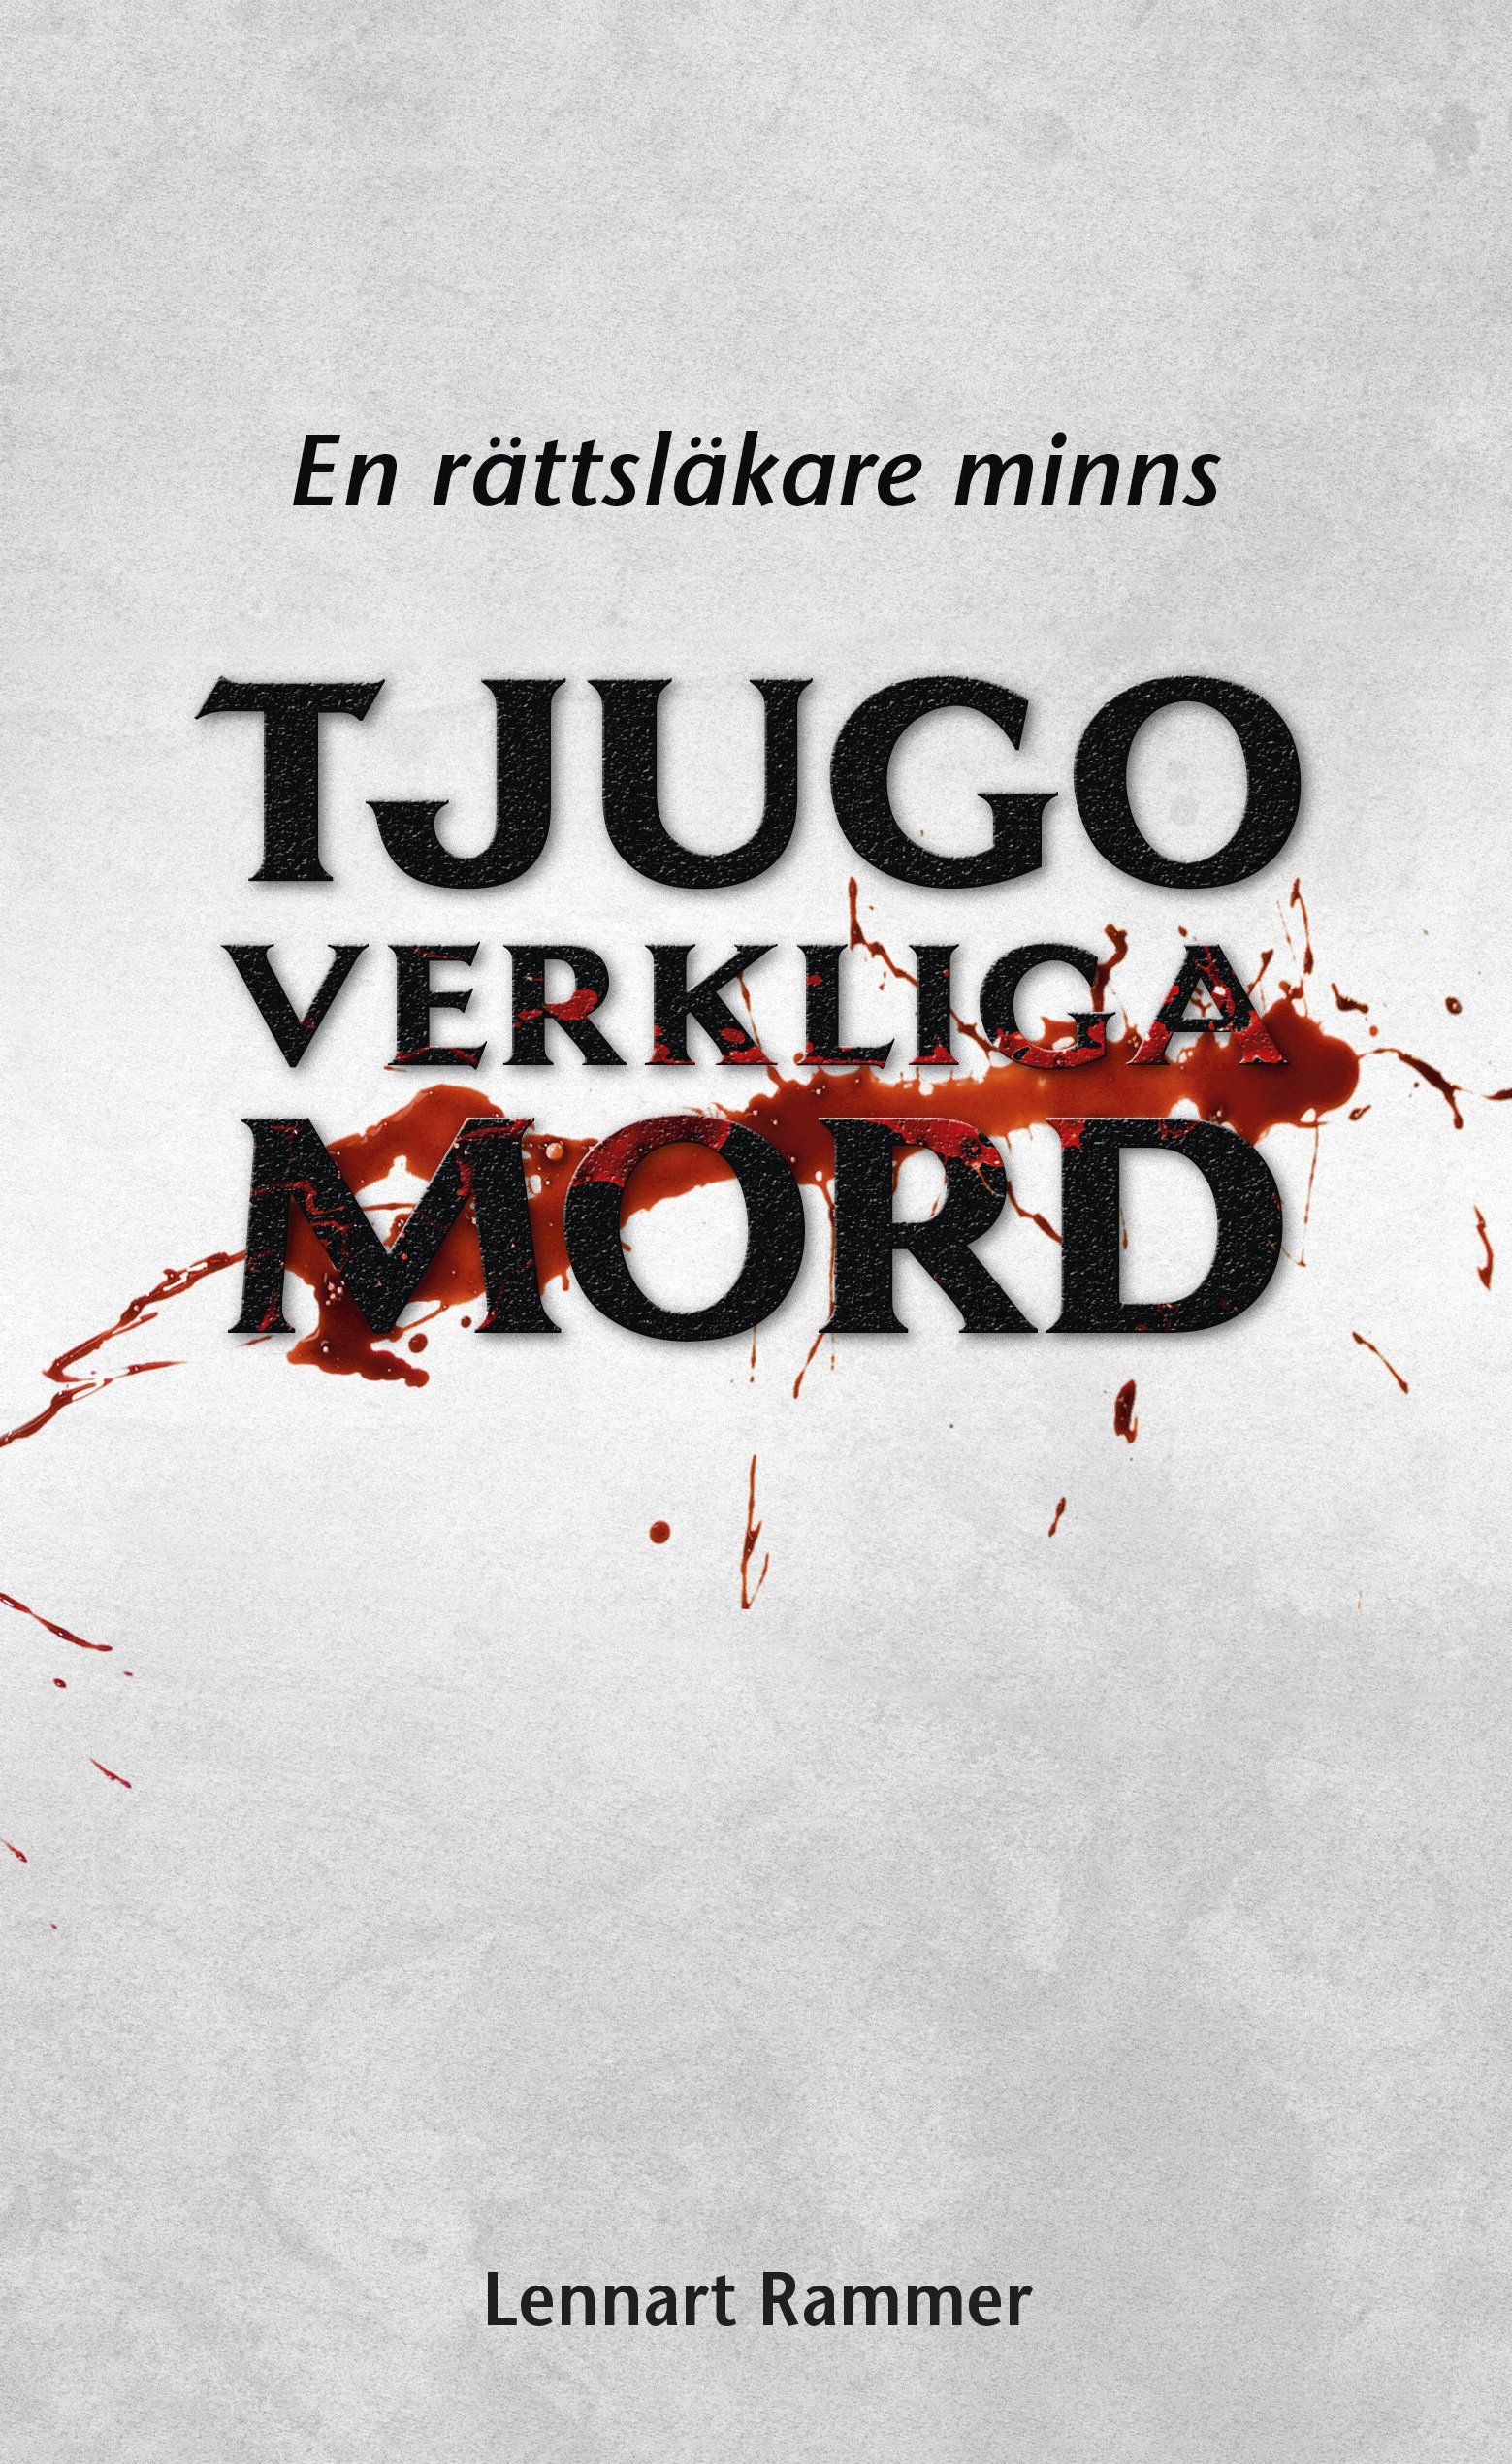 Boken Tjugo verkliga mord – en rättsläkare minns är skriven av Lennart Rammer på Stevali Bokförlag.